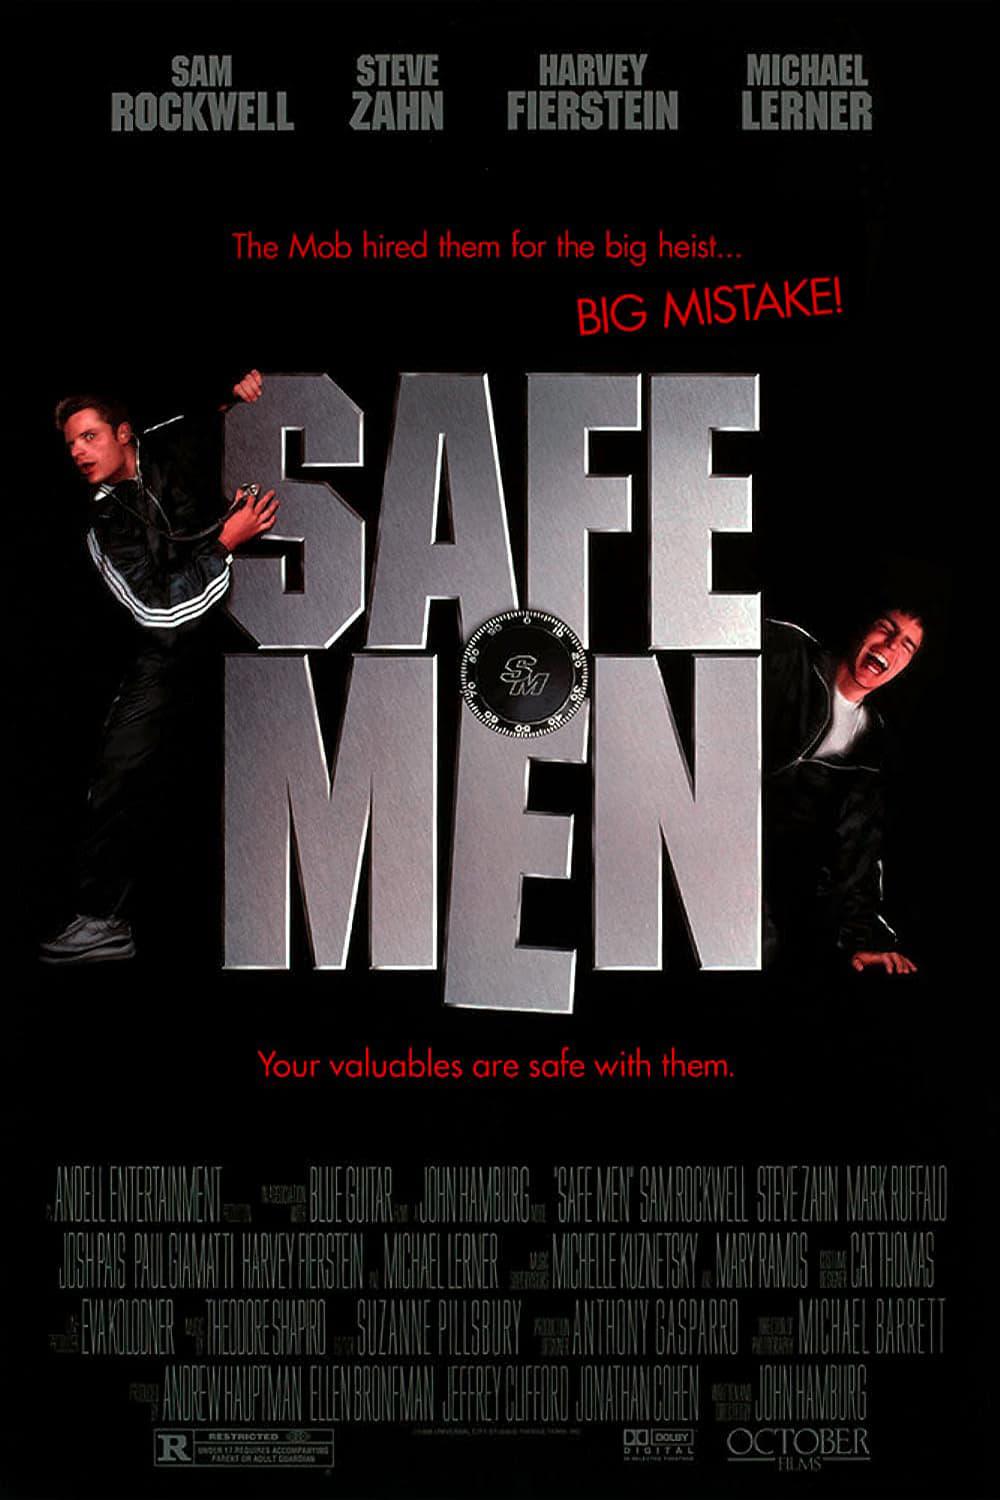 Safe Men poster